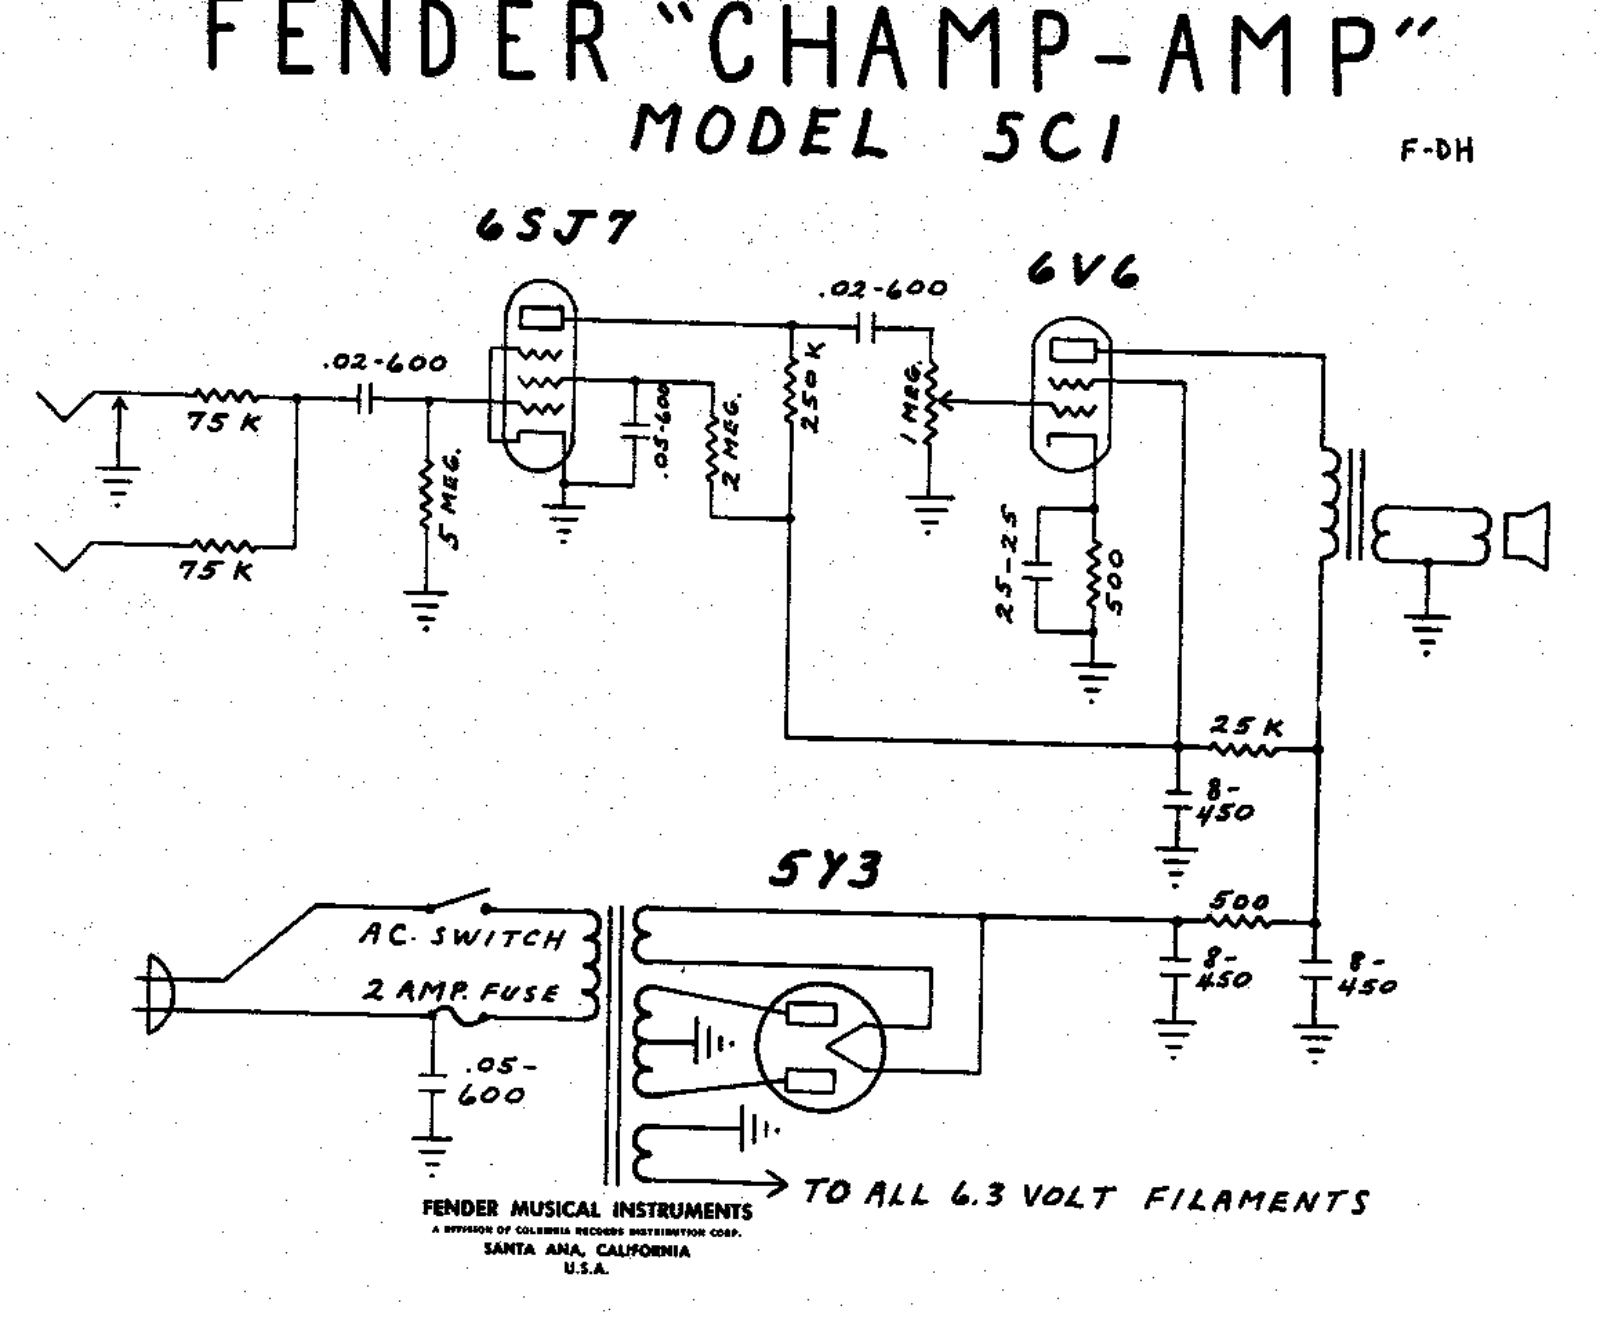 Fender Champ-5C1 Schematic